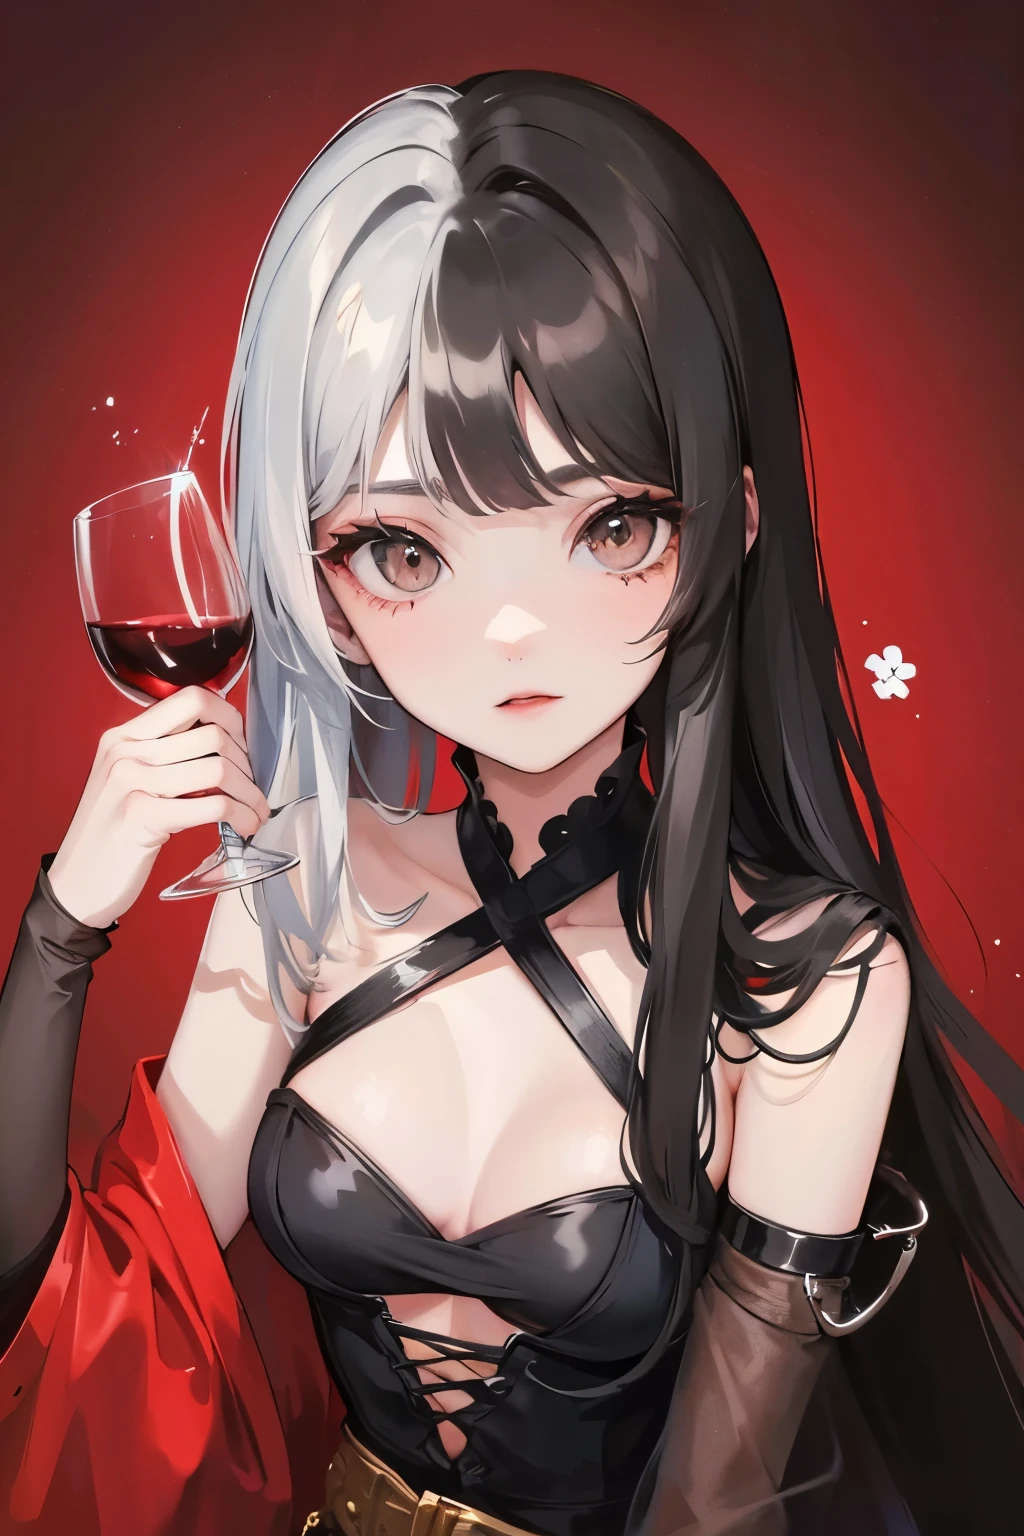 belle fille aux yeux gris avec une coiffure longue fendue, des cheveux noir-argent et tenant un verre de vin dans une main, fond de fleurs rouges, gros seins
